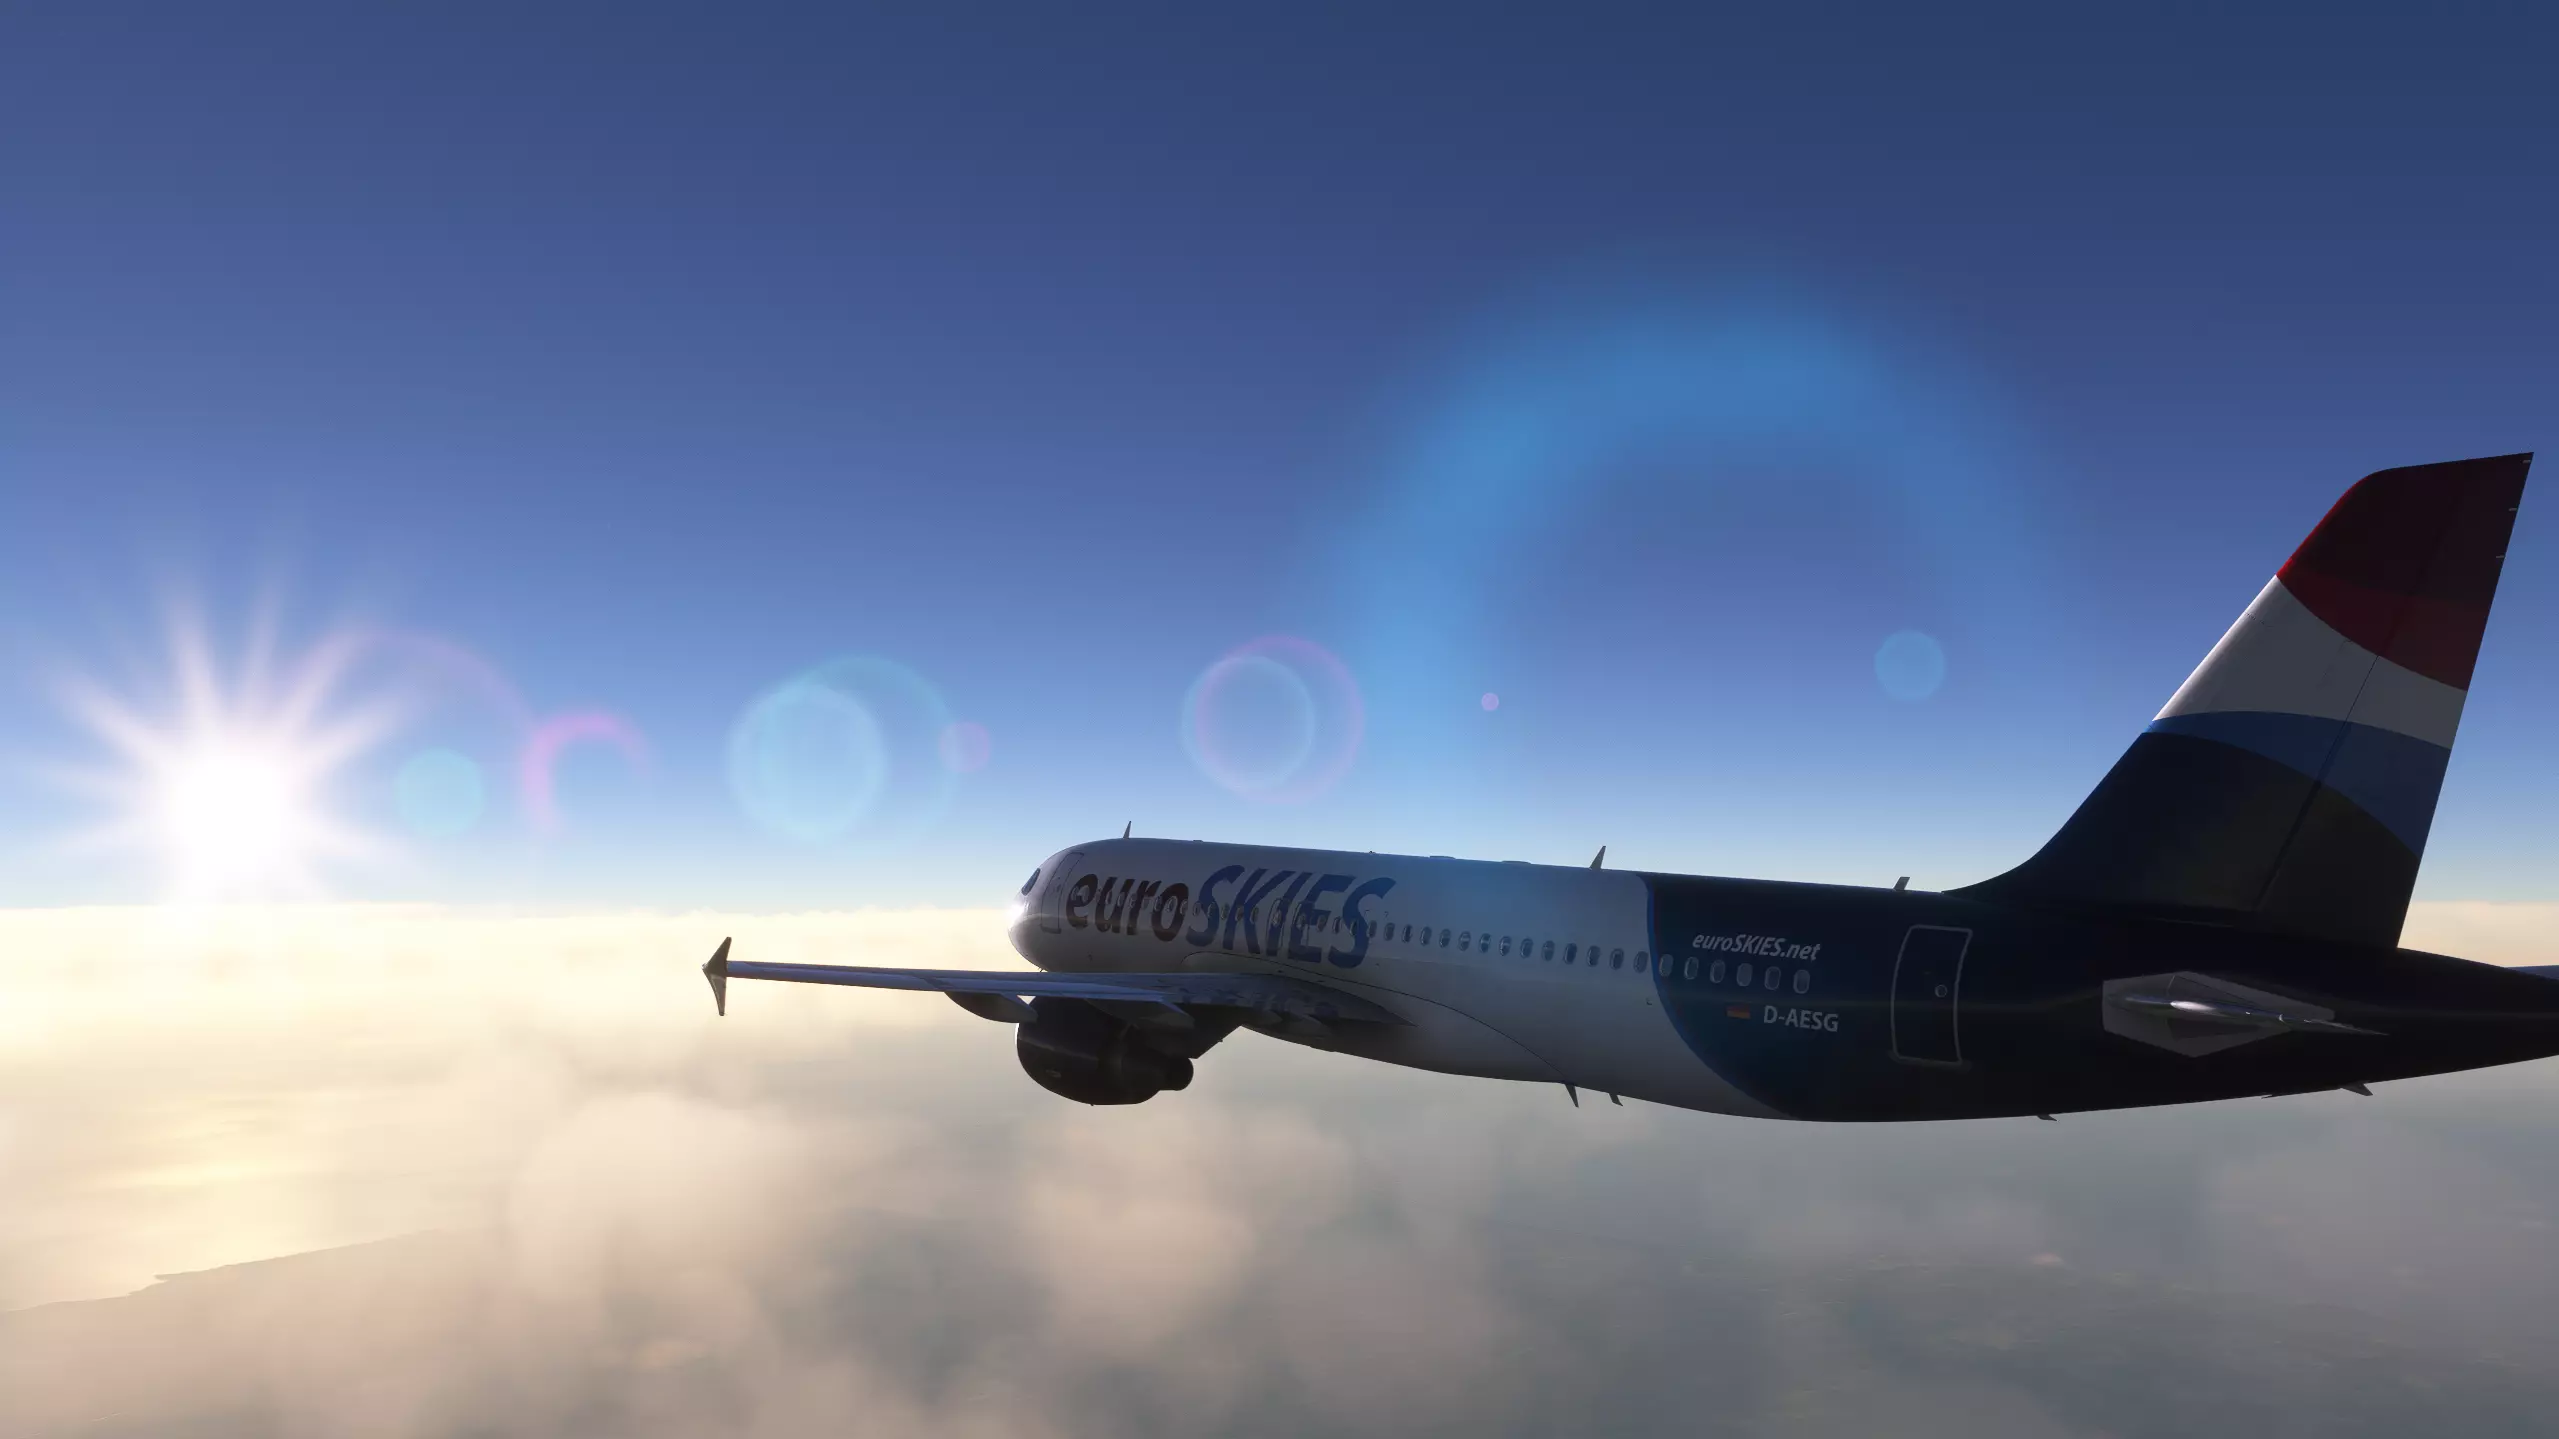 euroSKIES virtuelle Fluggesellschaft setzt Flugzeug aus Airbus A320 Flotte ein, um in die Sonne zu fliegen. 